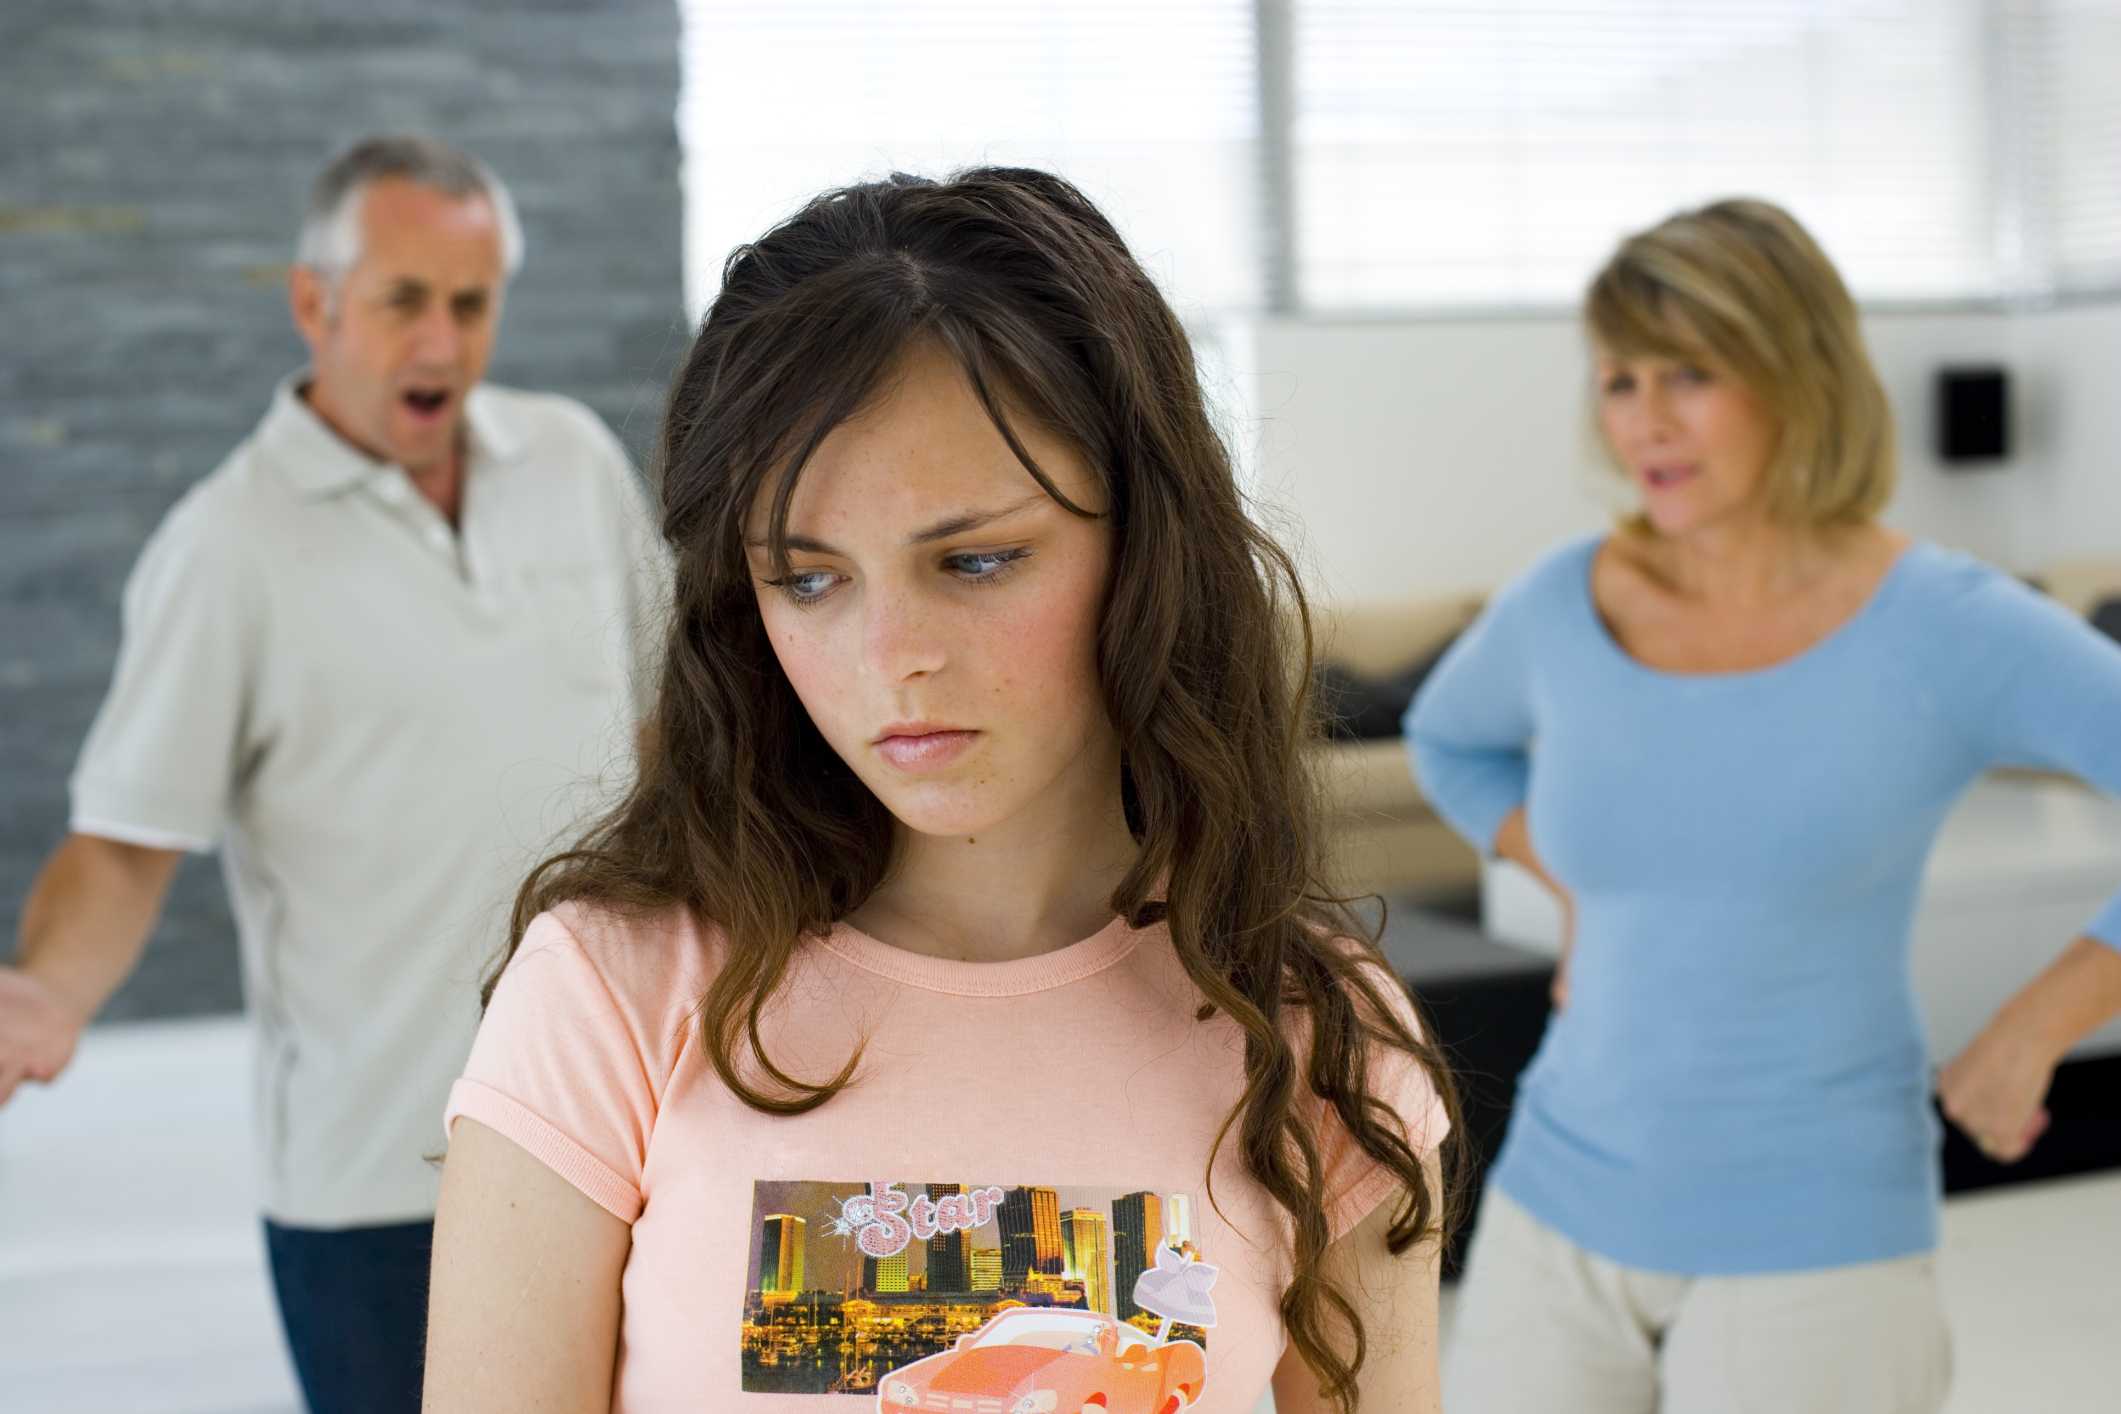 Как разговаривать с мамой: семейные связи, простые советы в отношениях с родителями и мнения психологов